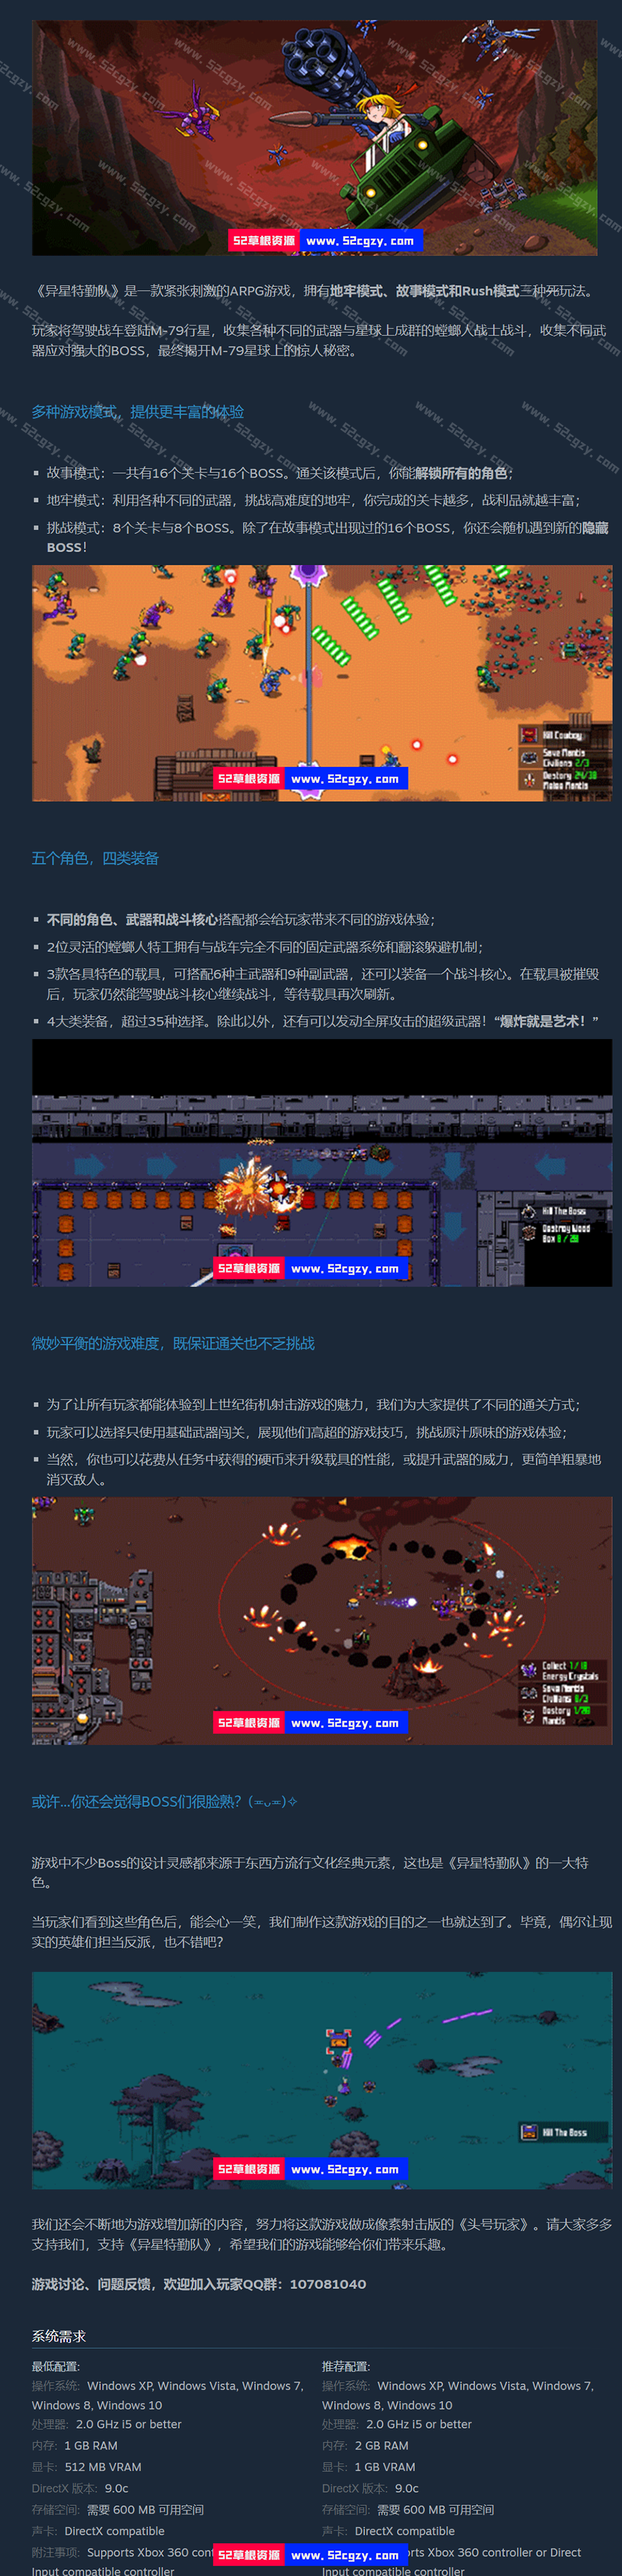 《异星特勤队》免安装中文绿色版[688MB] 单机游戏 第10张